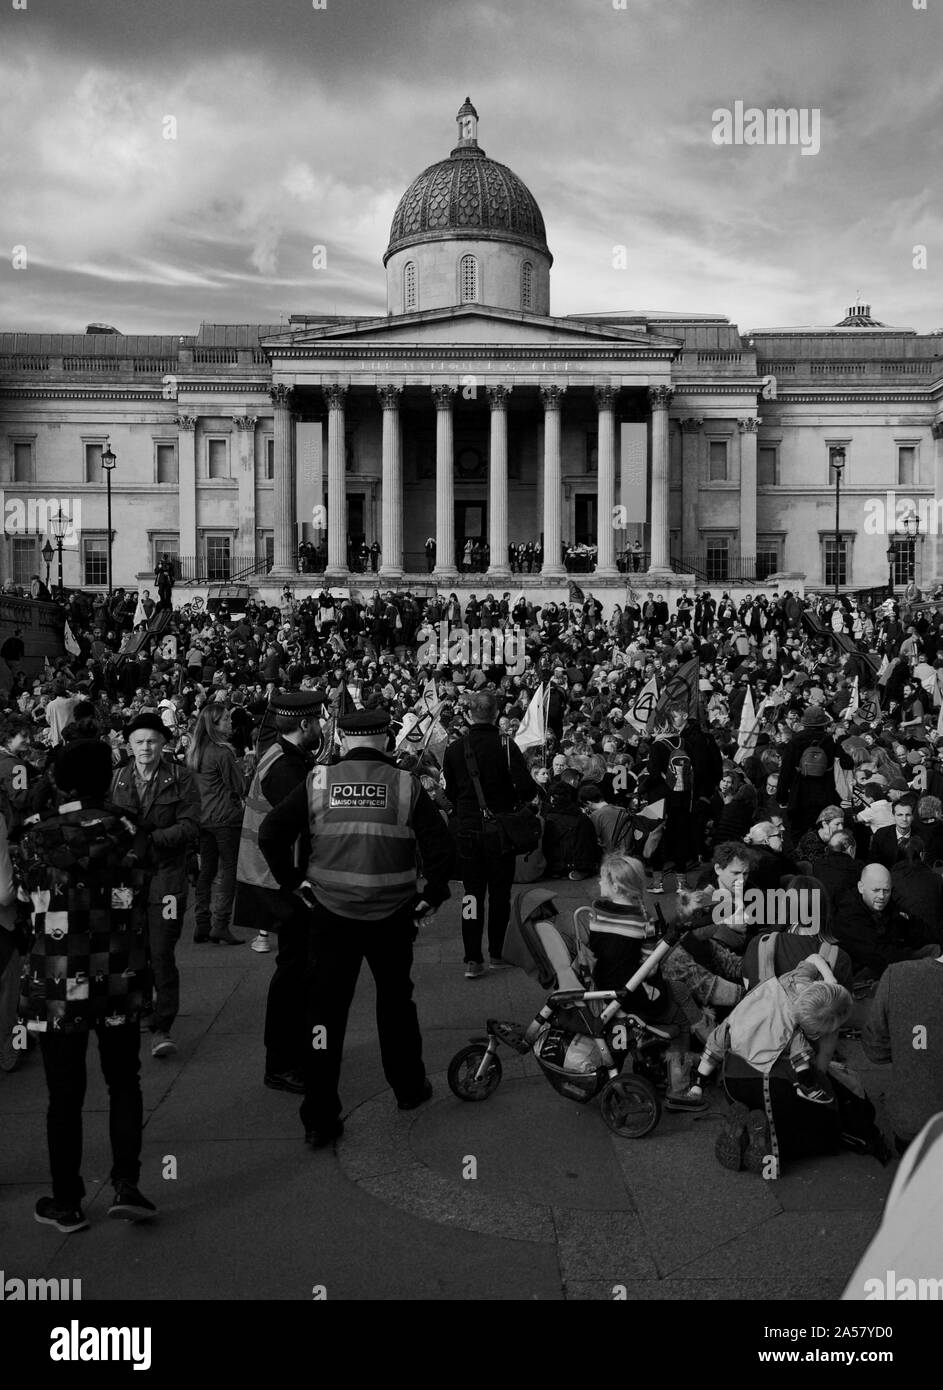 Les foules se rassemblent à l'extinction des manifestations de rébellion à Trafalgar Square à Londres, pour protester contre l'action pour le climat à prendre pour prévenir le changement climatique. Banque D'Images